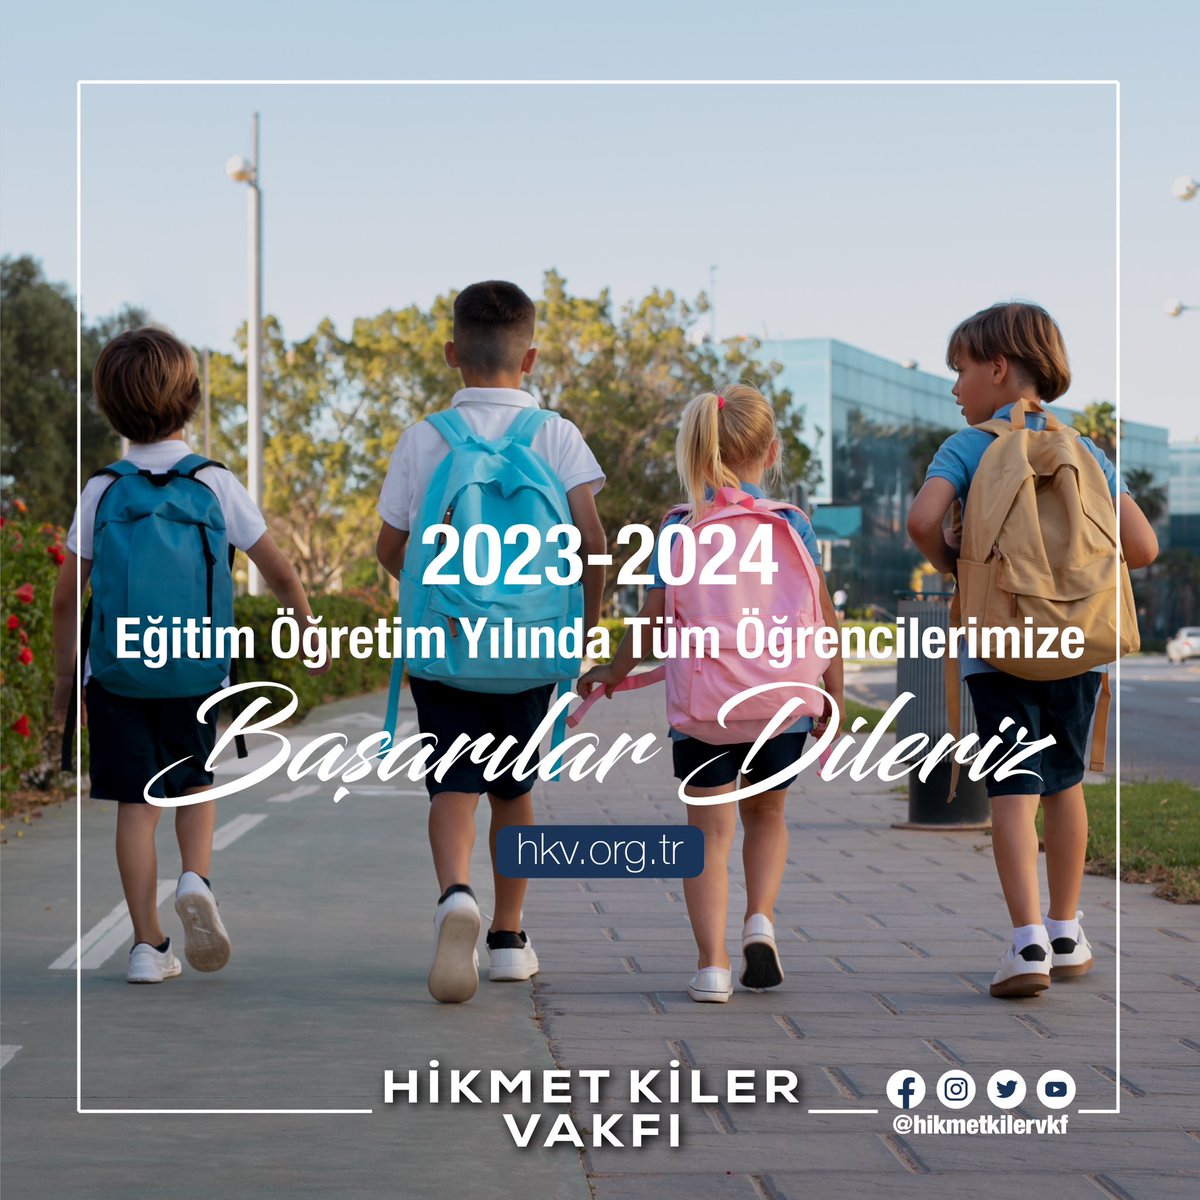 2023-2024 Eğitim Öğretim Yılında Tüm Öğrencilerimize Başarılar Dileriz…
#hikmetkilervakfı